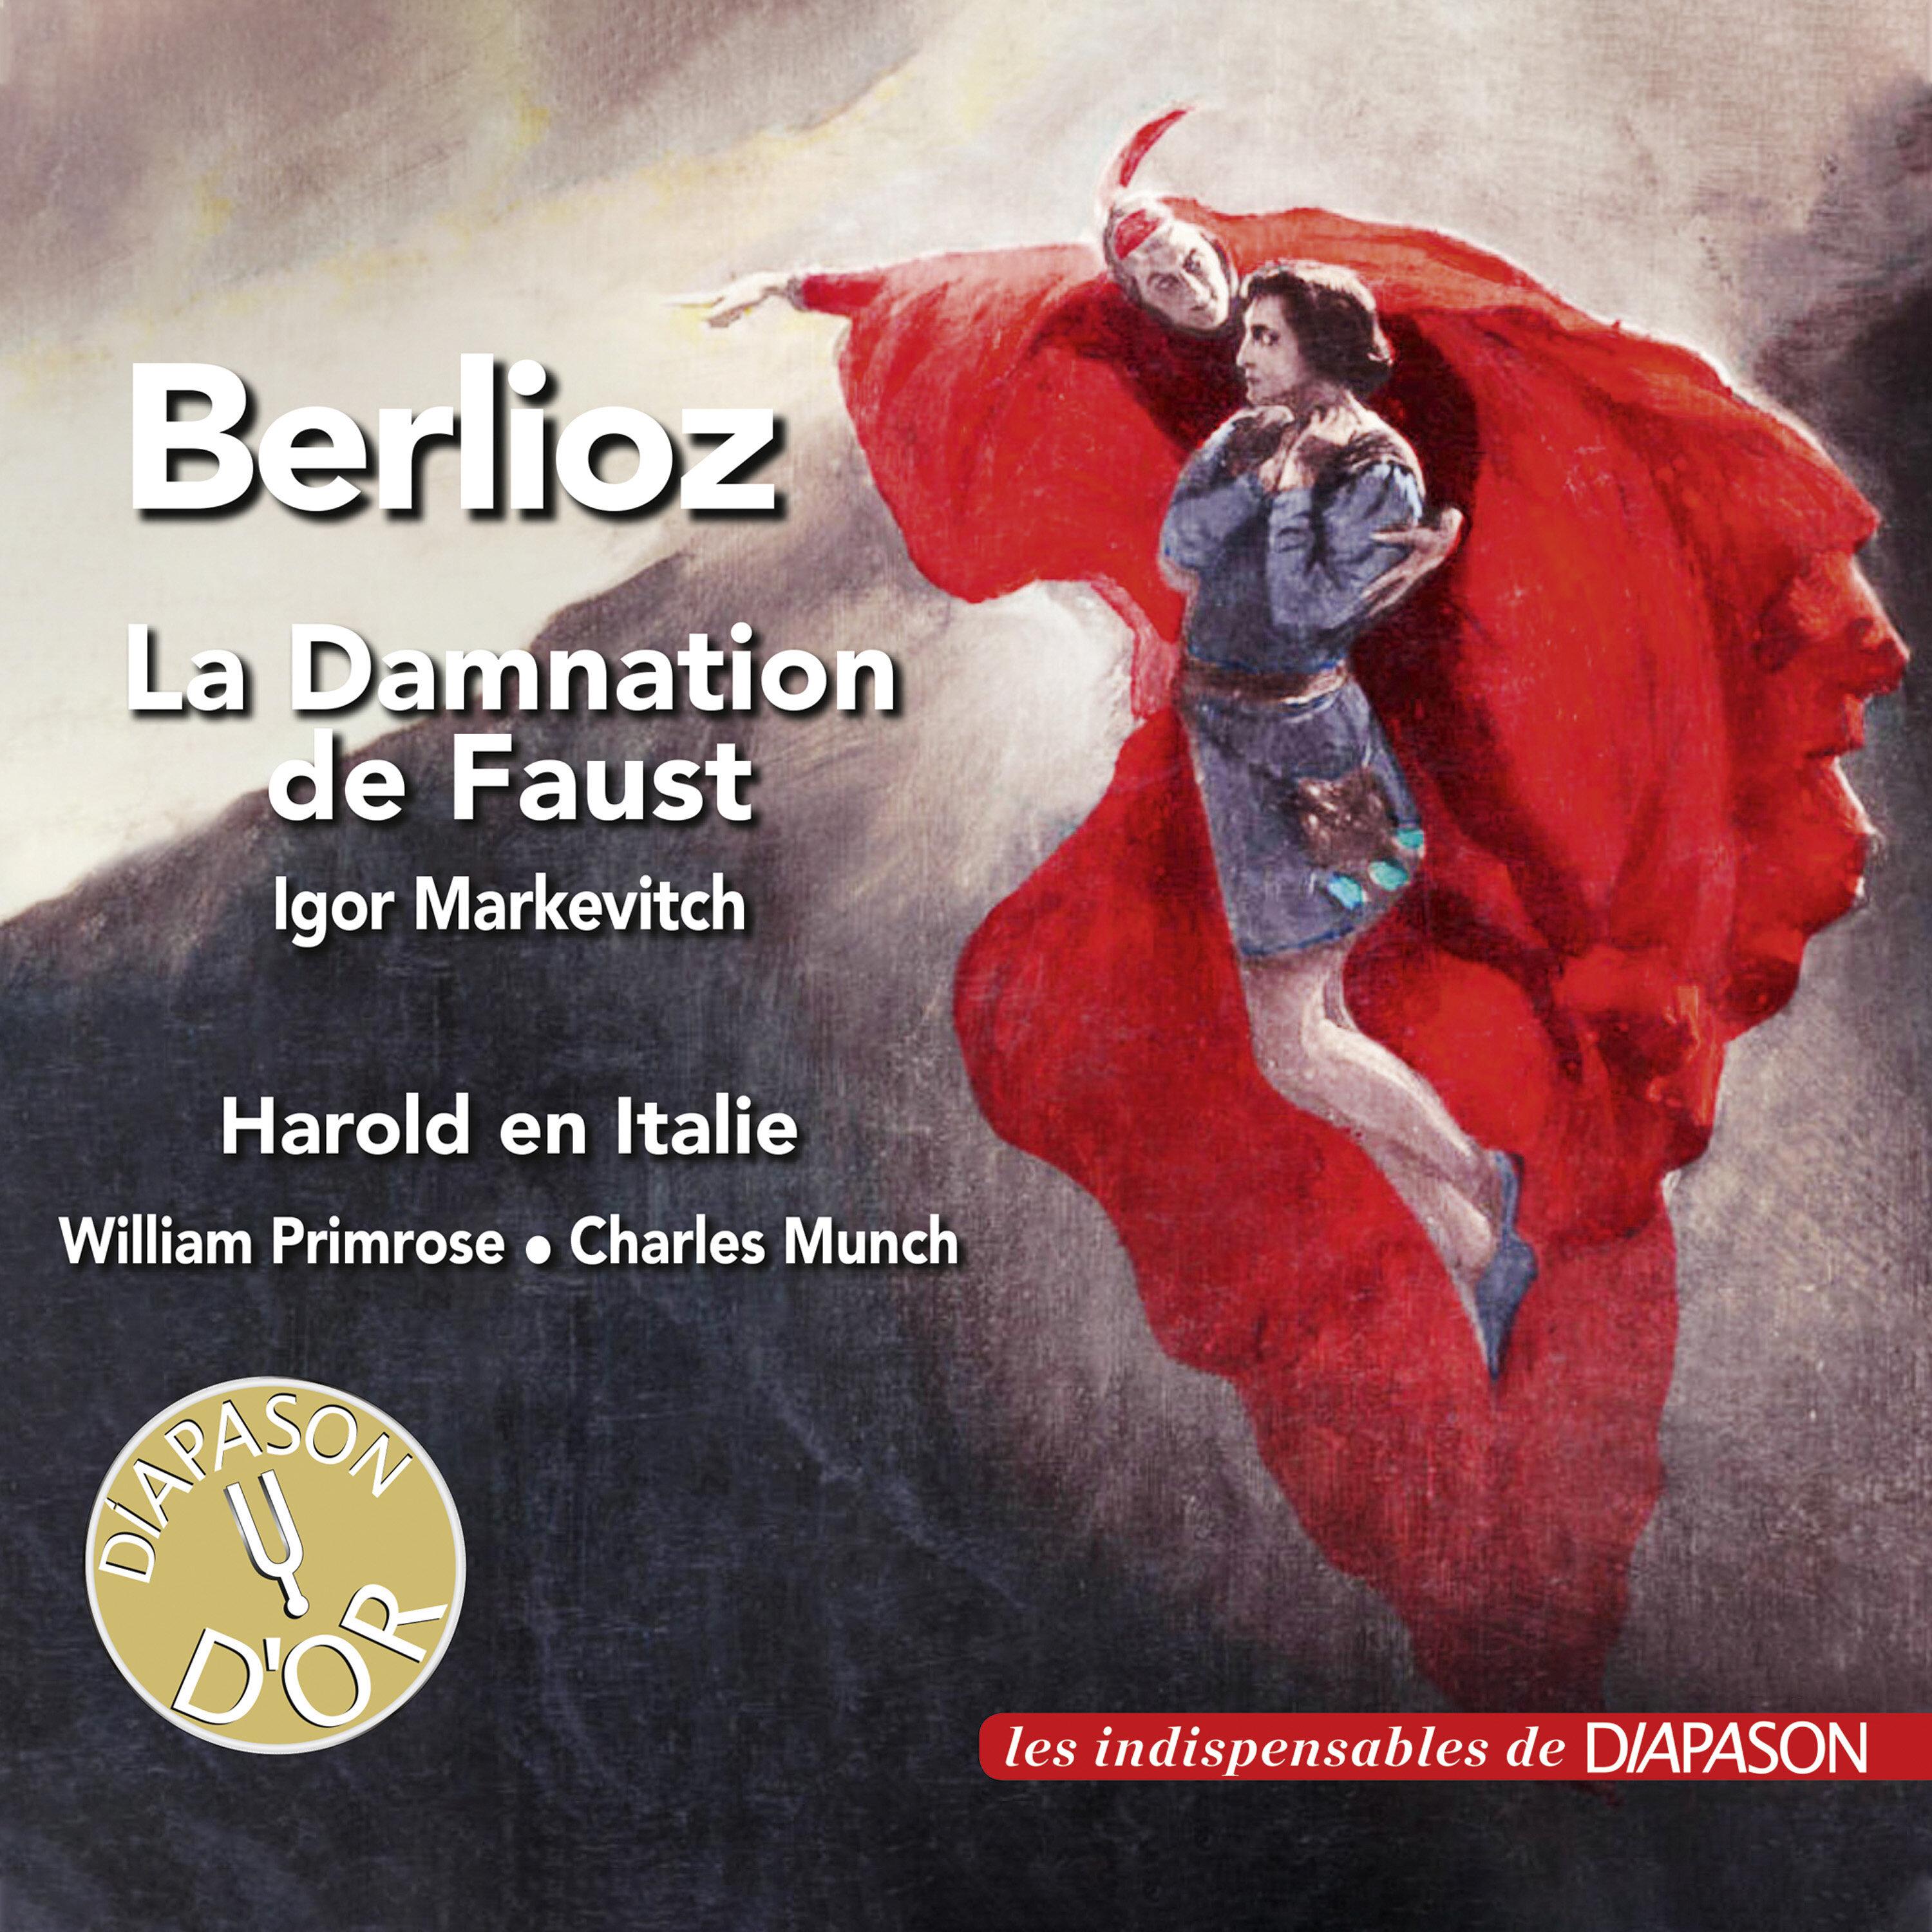 Orchestre des concerts Lamoureux - La damnation de Faust, Op. 24, H. 111, Pt. 3 Scene 9: Air de Faust, 